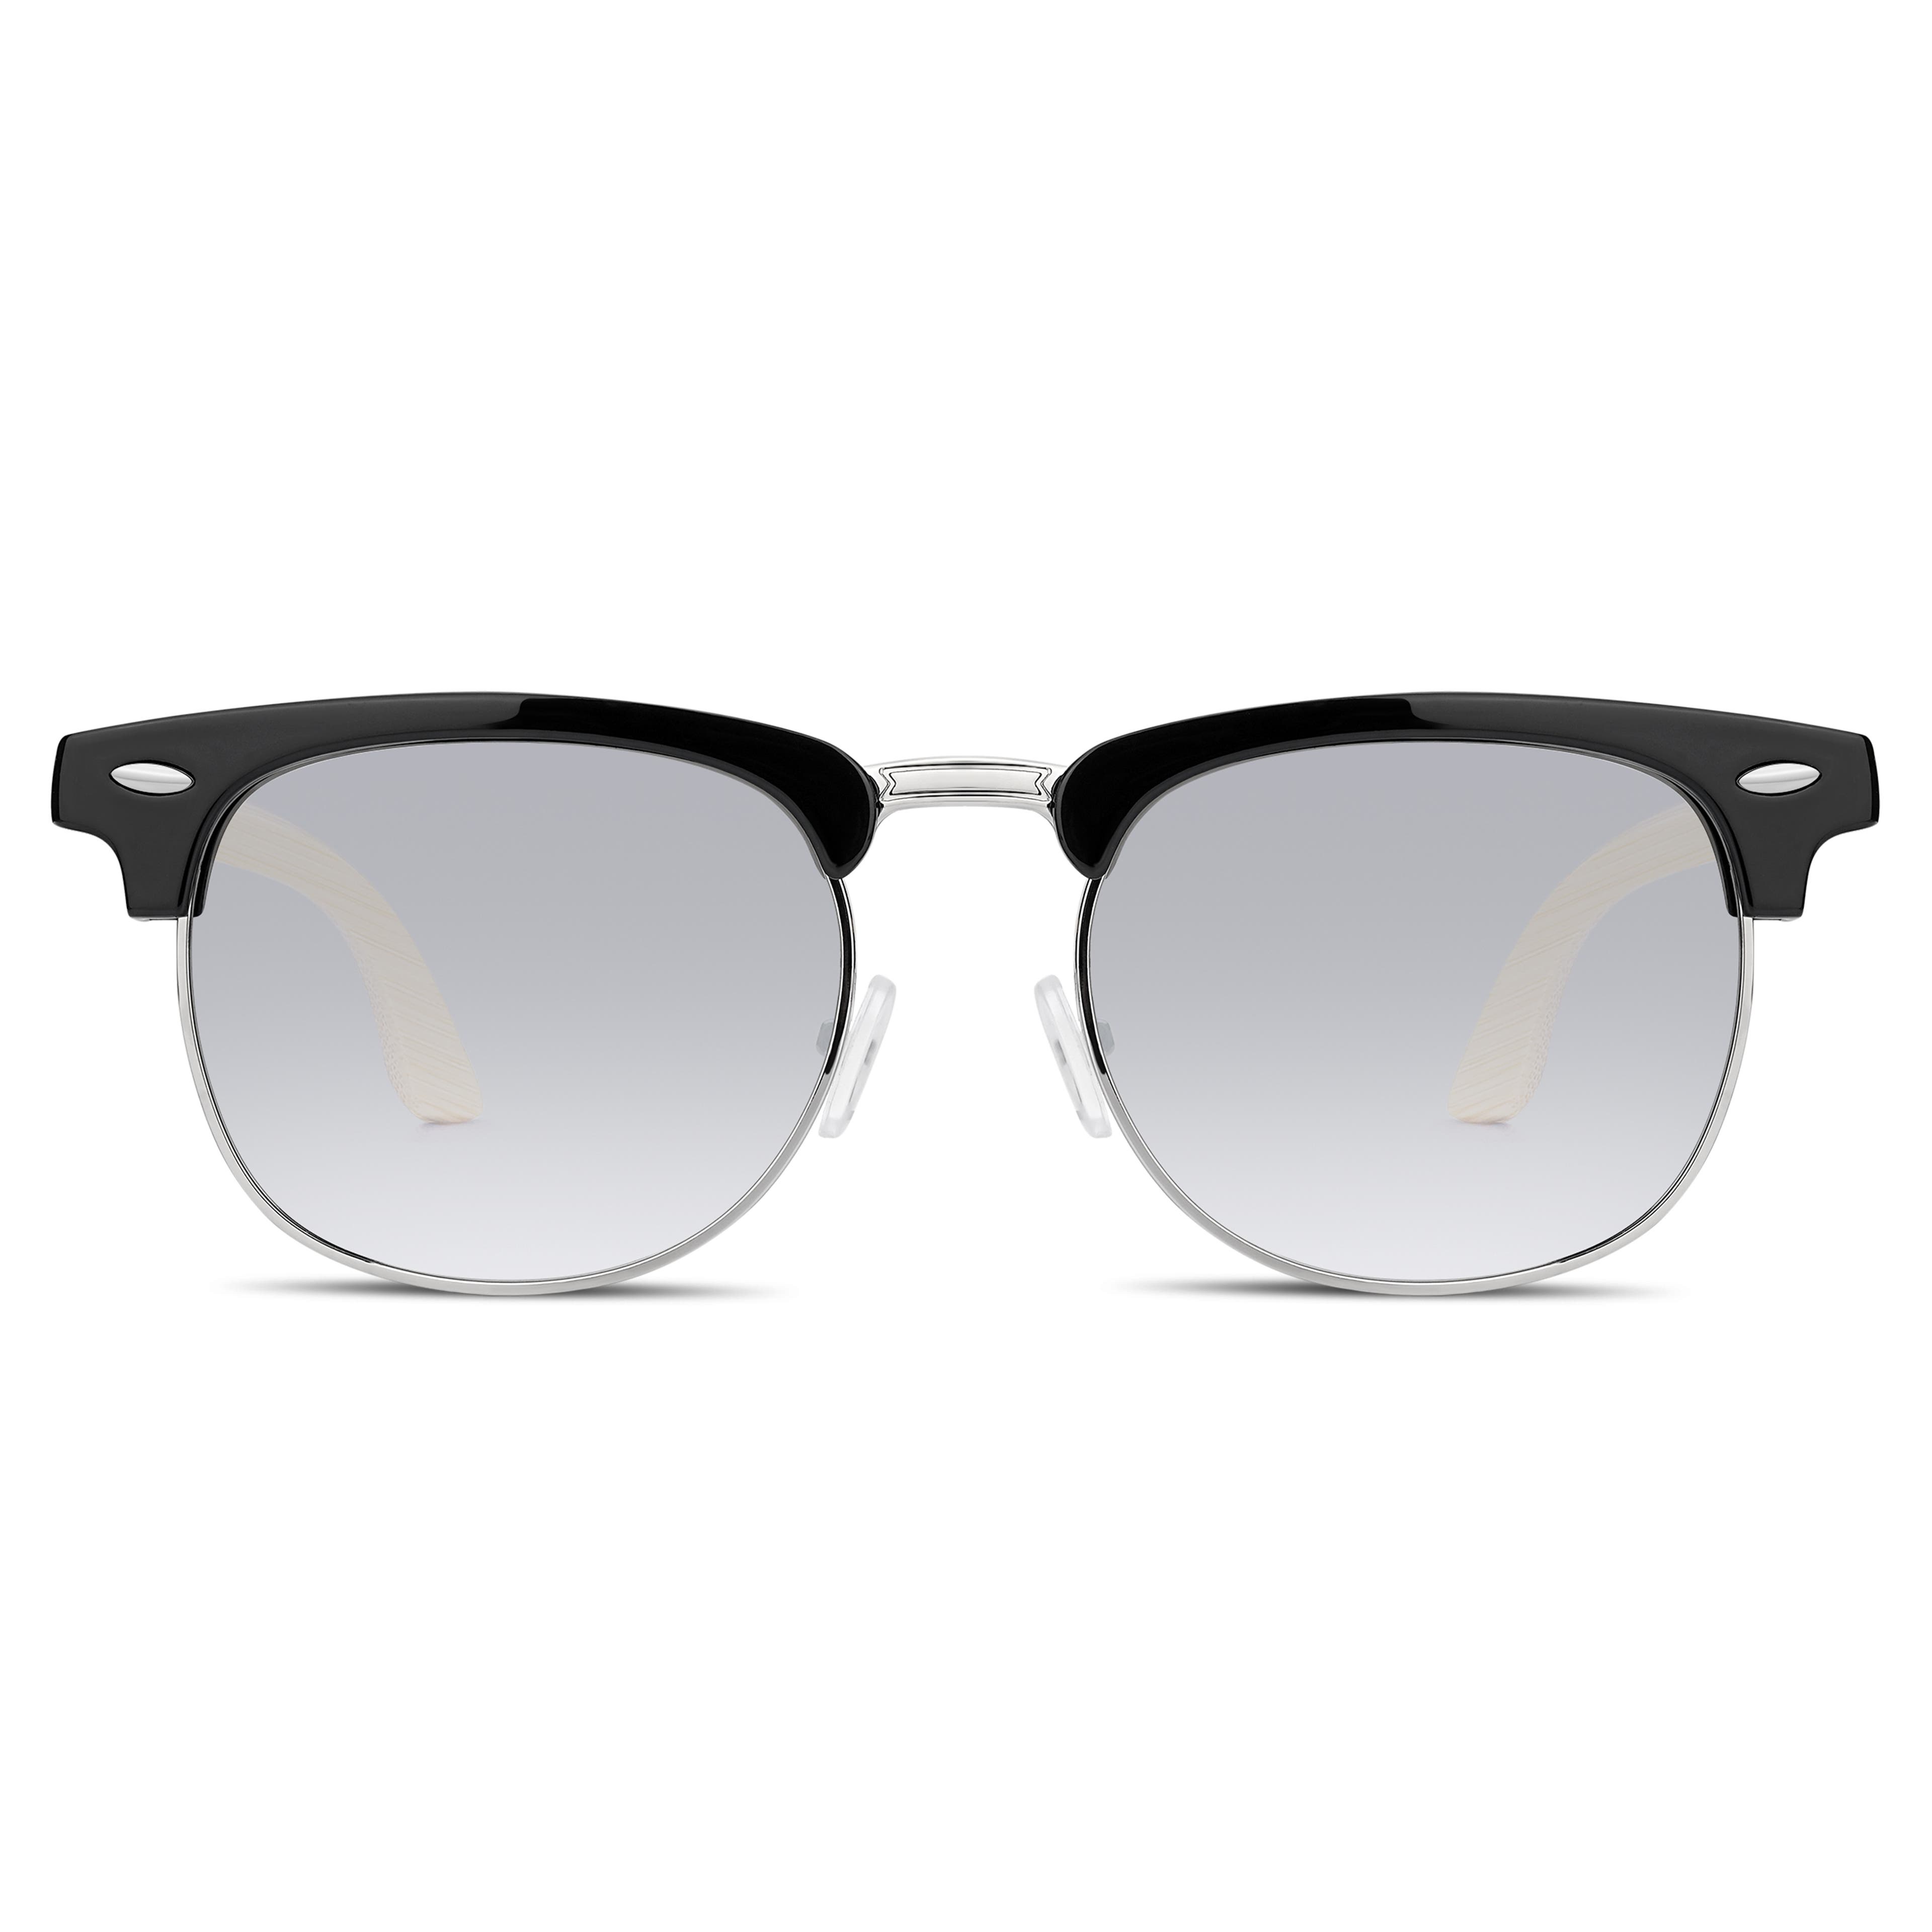 Browline слънчеви очила с черни рамки, опушени стъкла и бамбукови дръжки